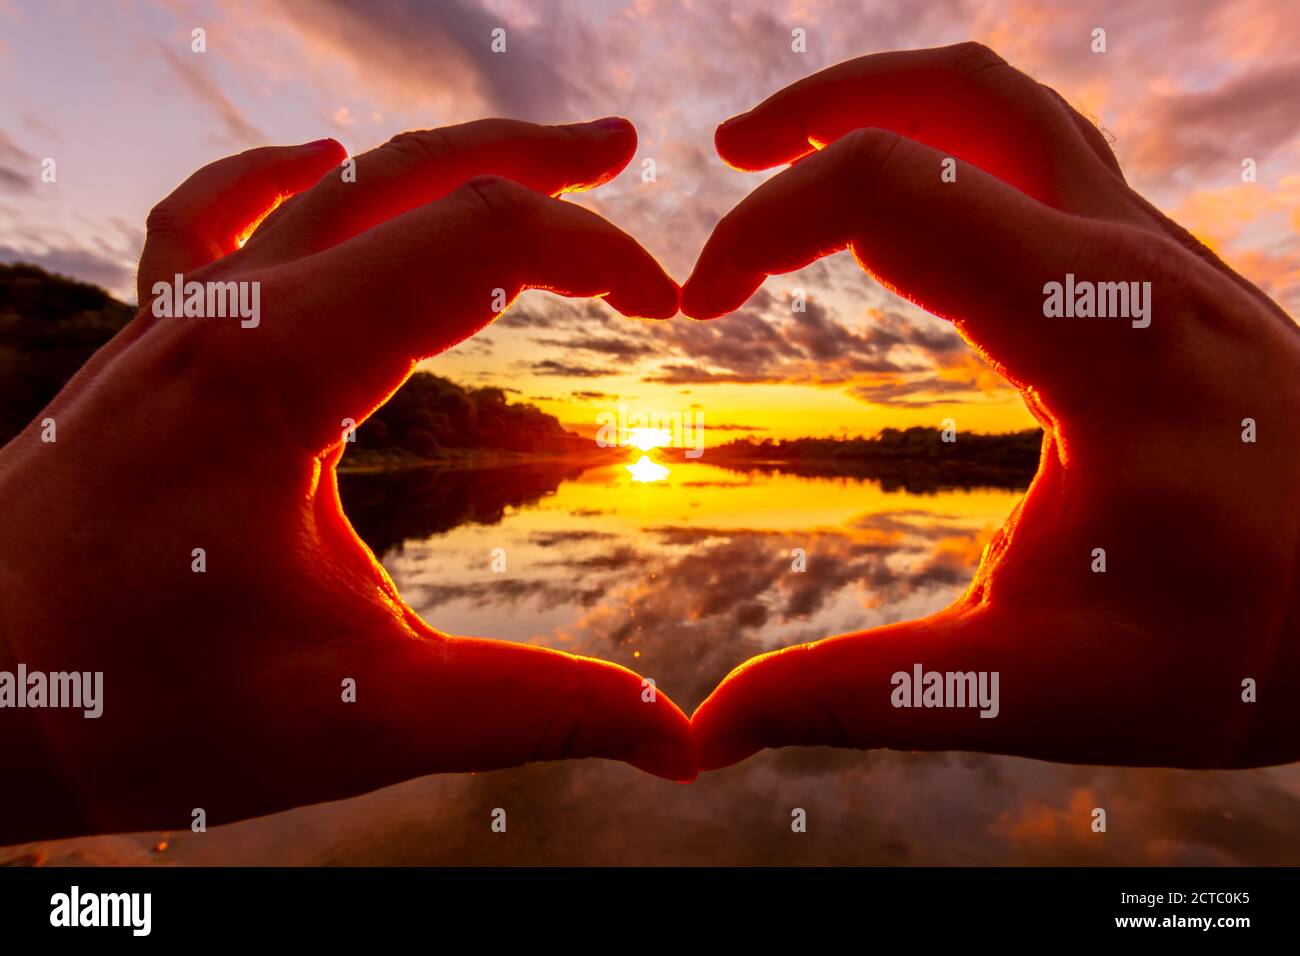 hand heart sunset